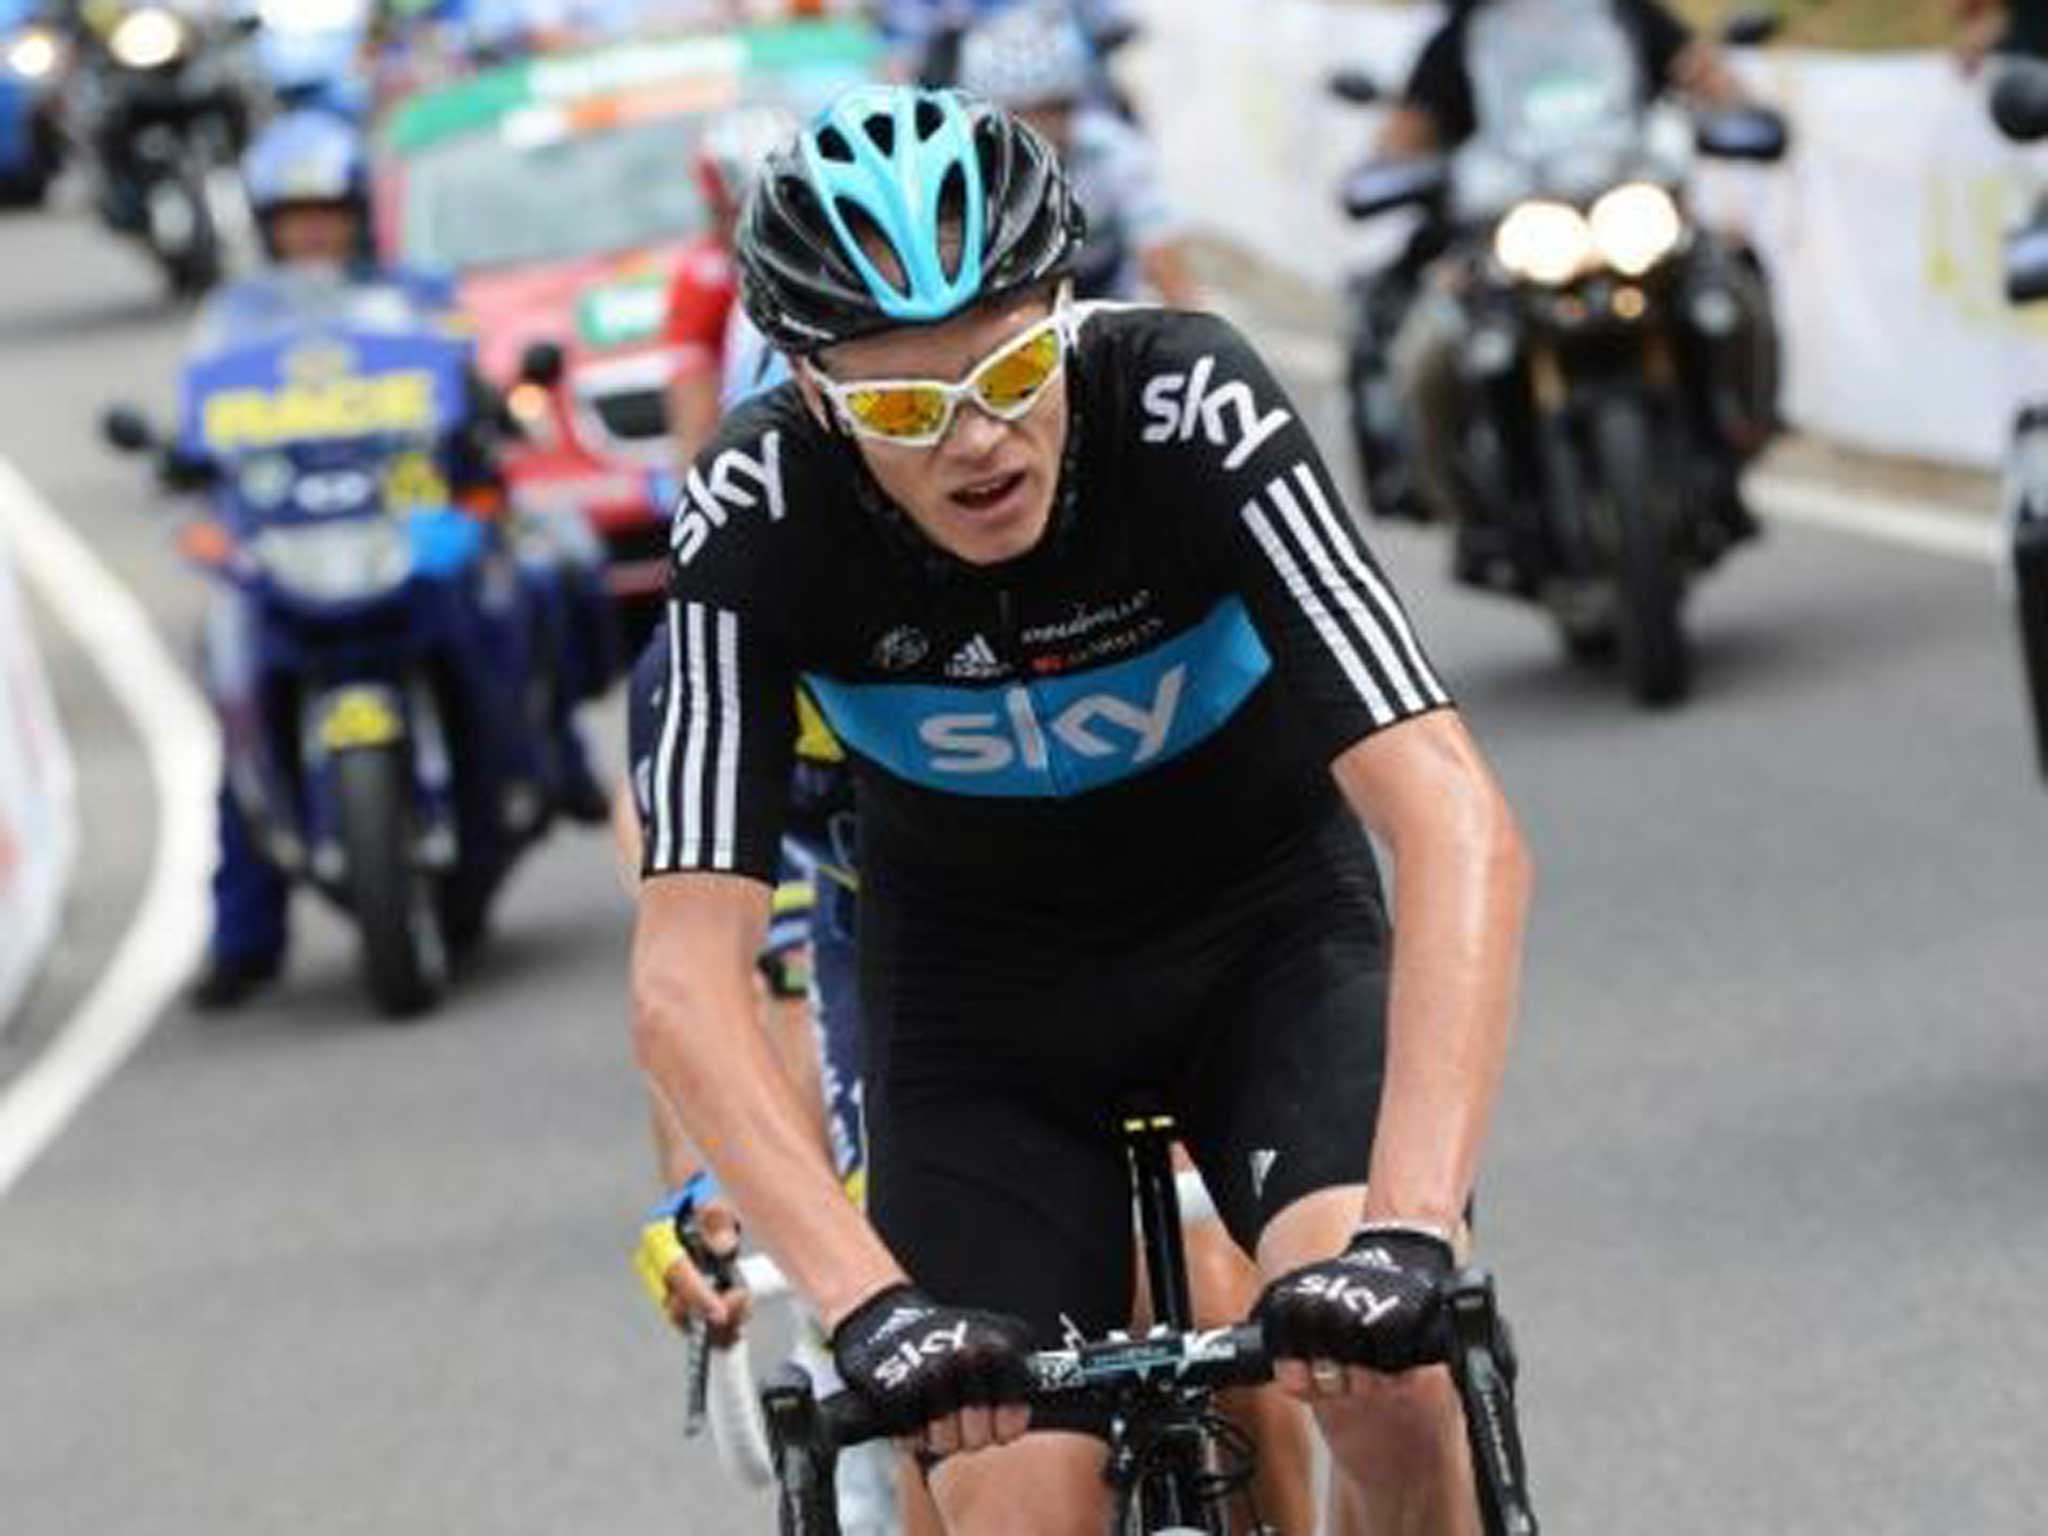 Chris Froome won last year’s Tour de France